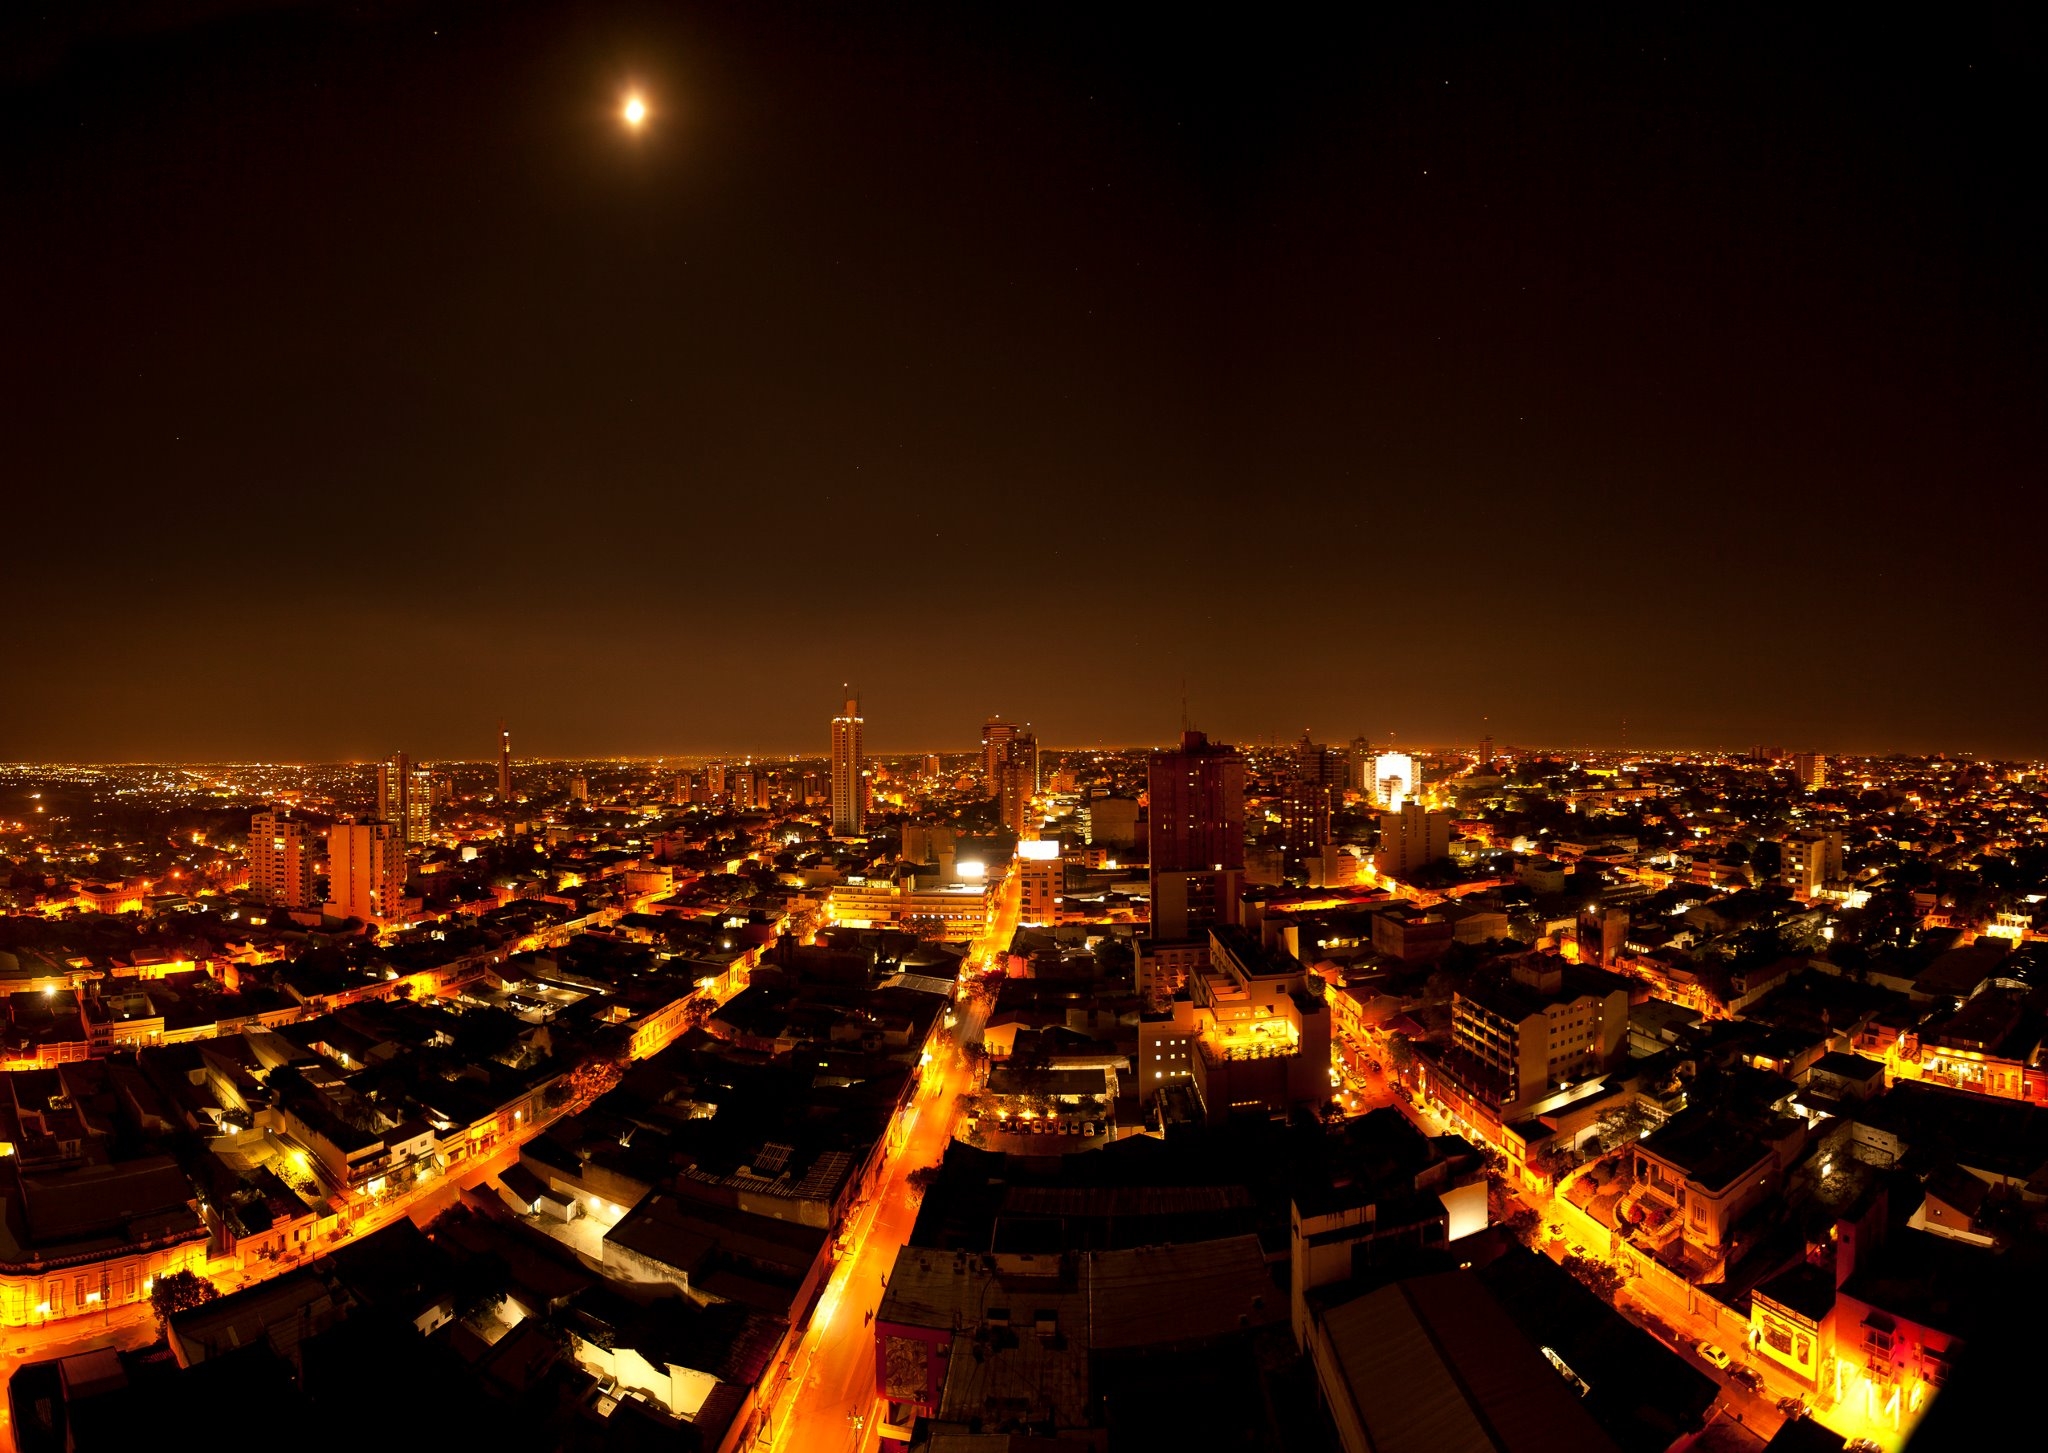 La Asunción city in Paraguay by night